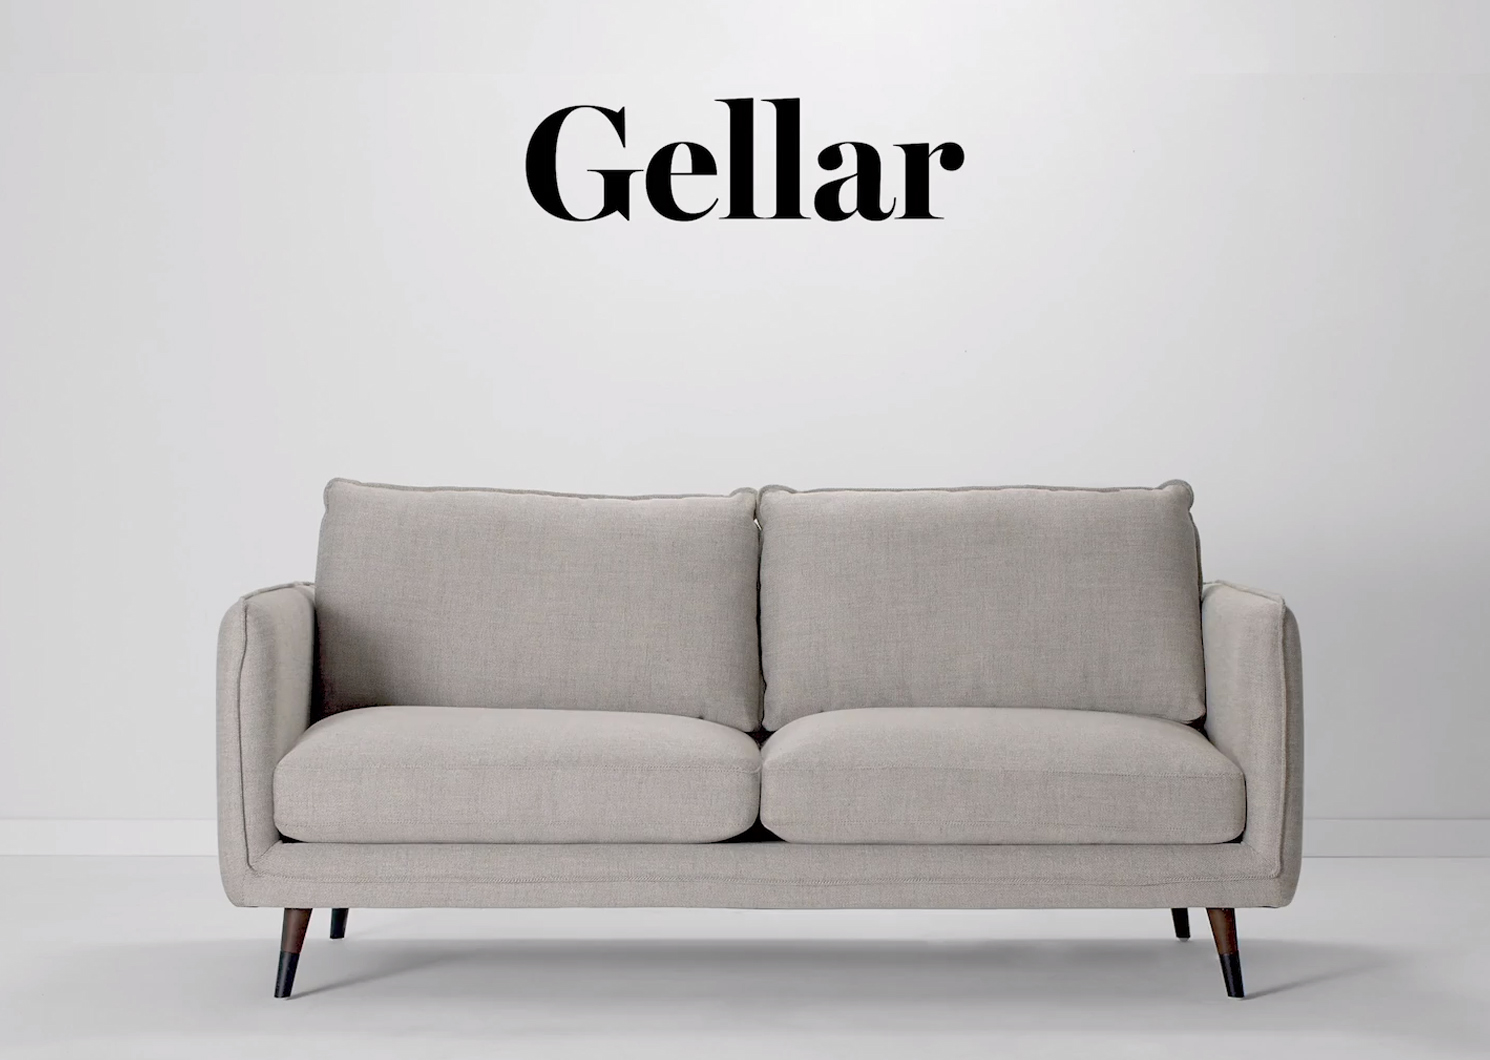 Gellar Sofa 77" -Axl Grey